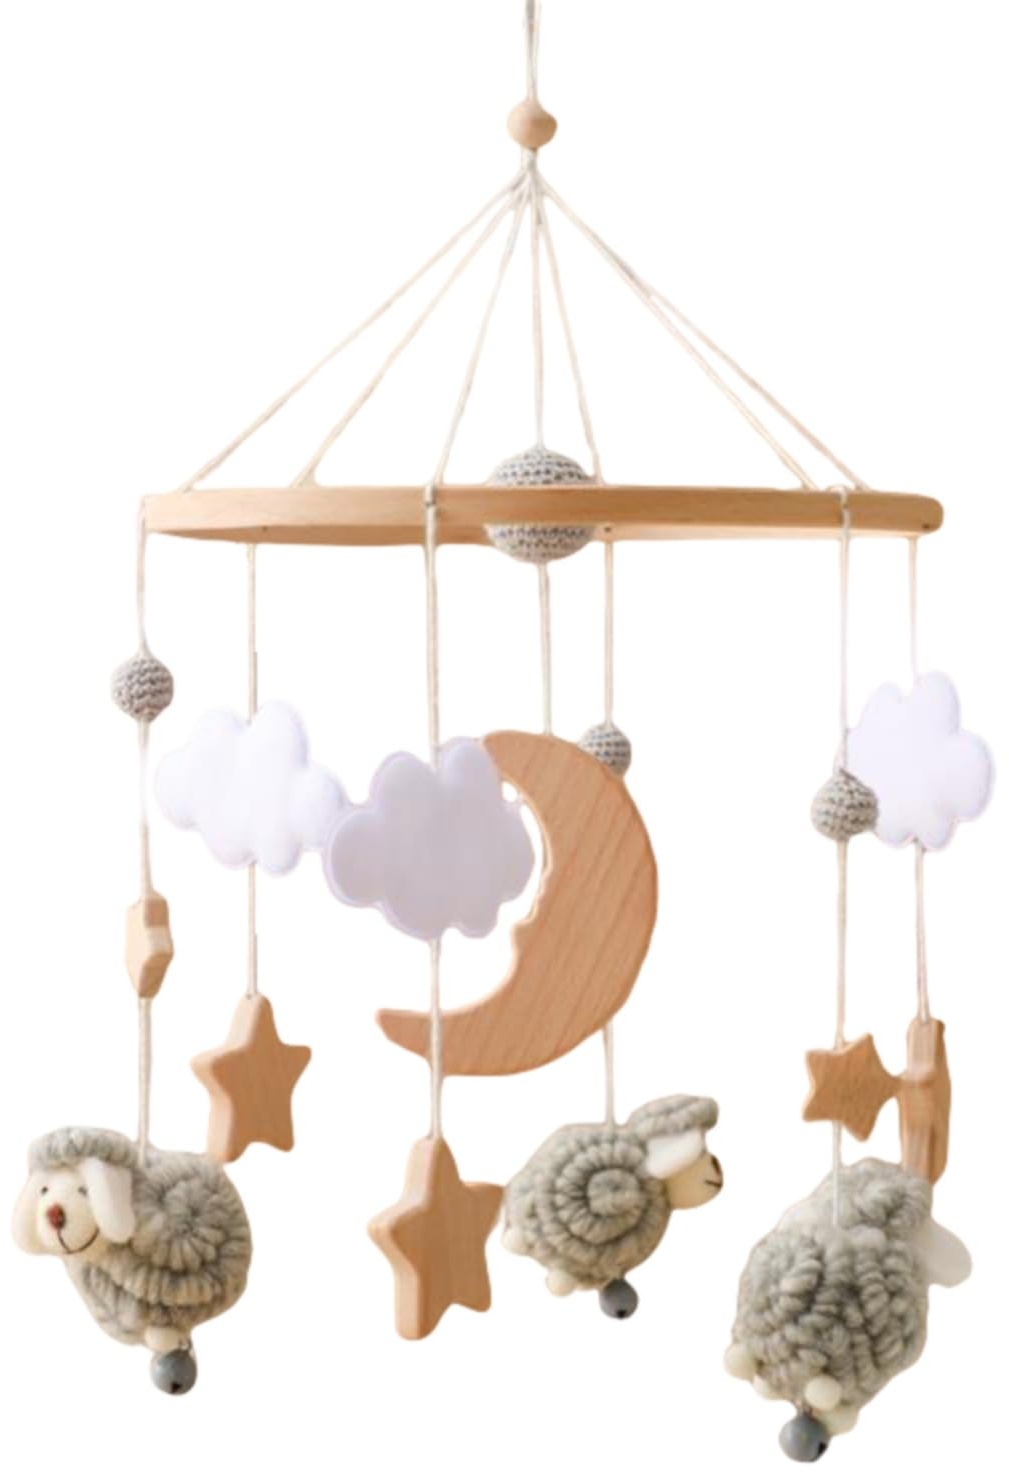 Baby Mobile Babybett, Mobile Baby Windspiel mit Lamm, Baby Mobile für Bett, Hängende Bettglocke Anhänger Geschenk für Neugeborenen Junge Mädchen (Grau)